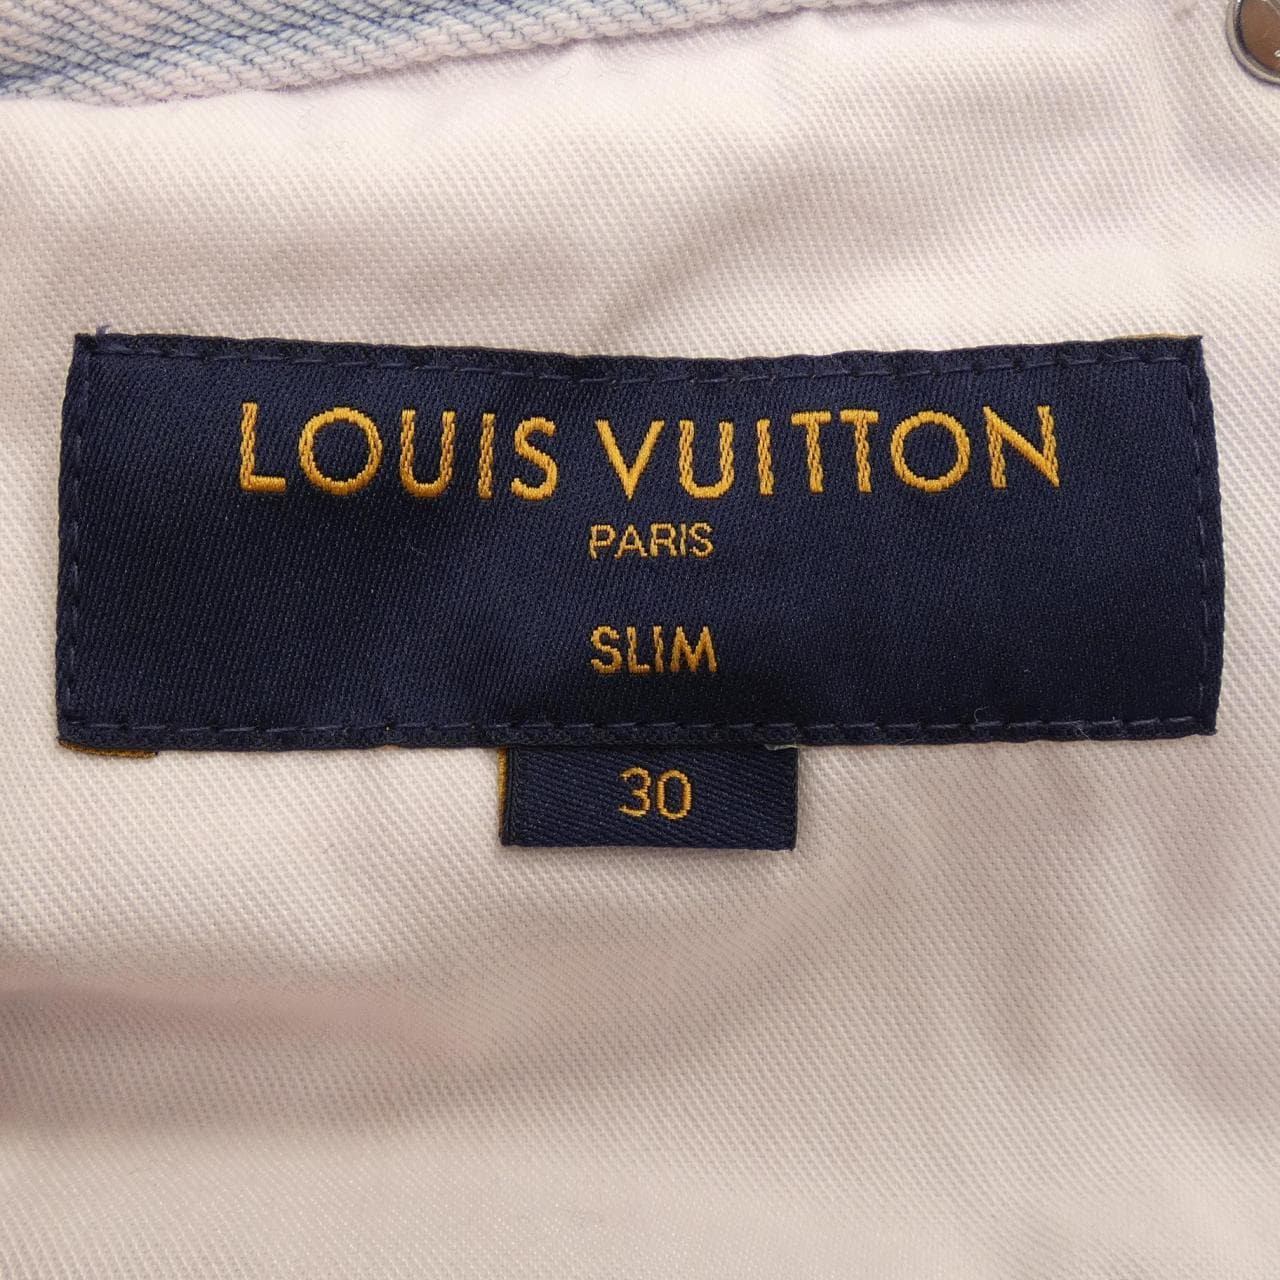 LOUIS LOUIS VUITTON jeans